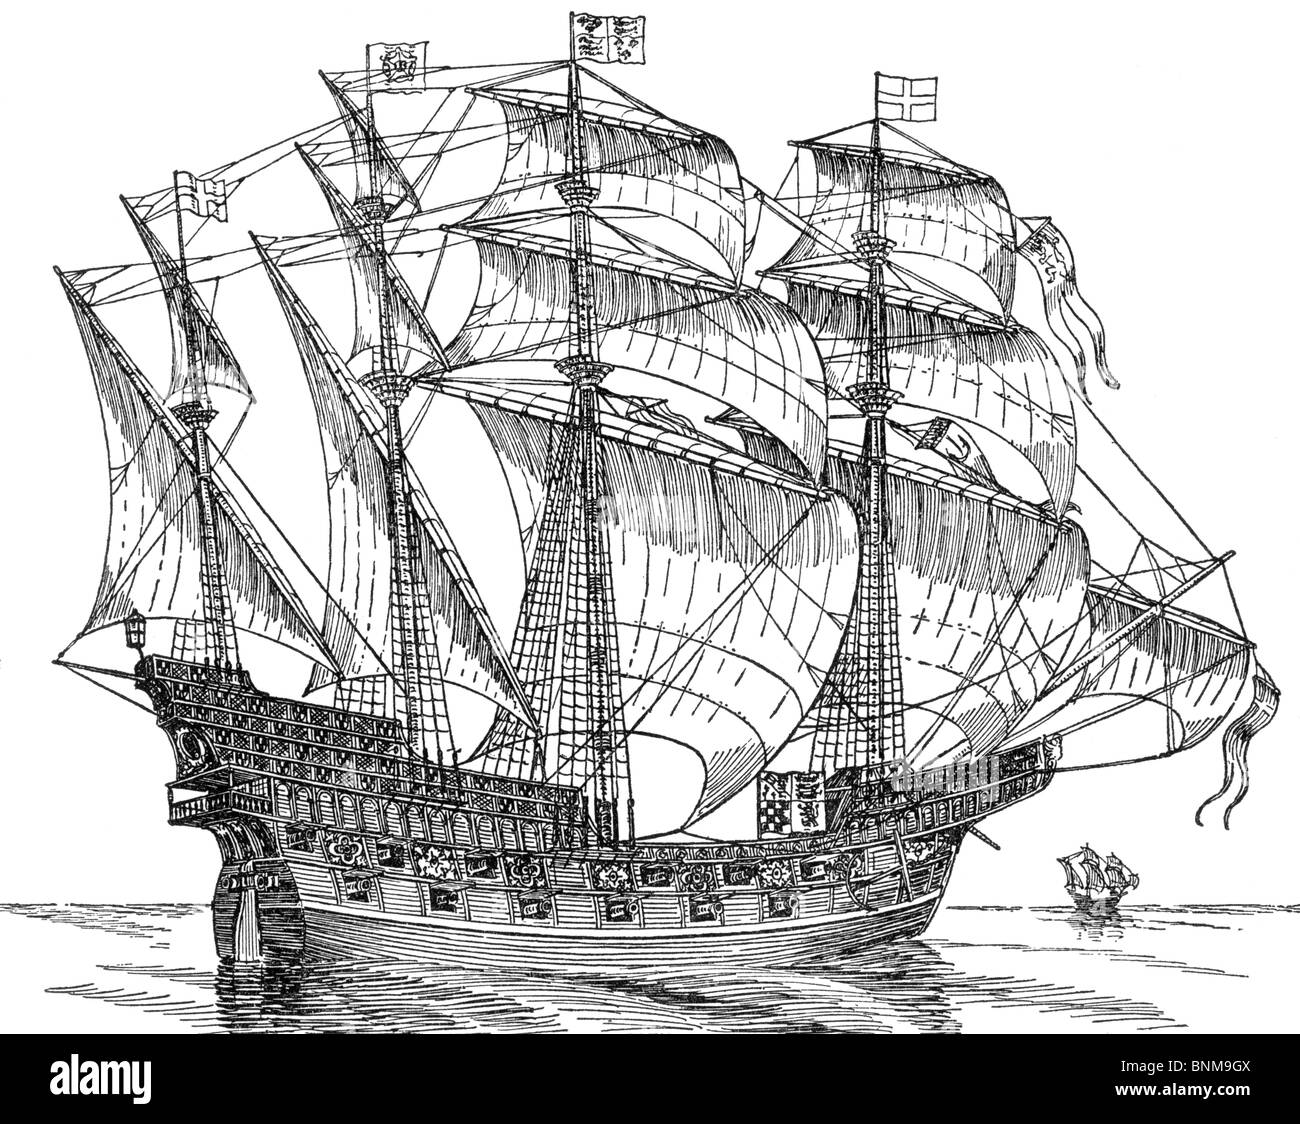 Illustration noir et blanc de l'Elizabethan Galleon HMS Ark Royal, bâtiment amiral de la flotte qui détruit l'Armada espagnole Banque D'Images